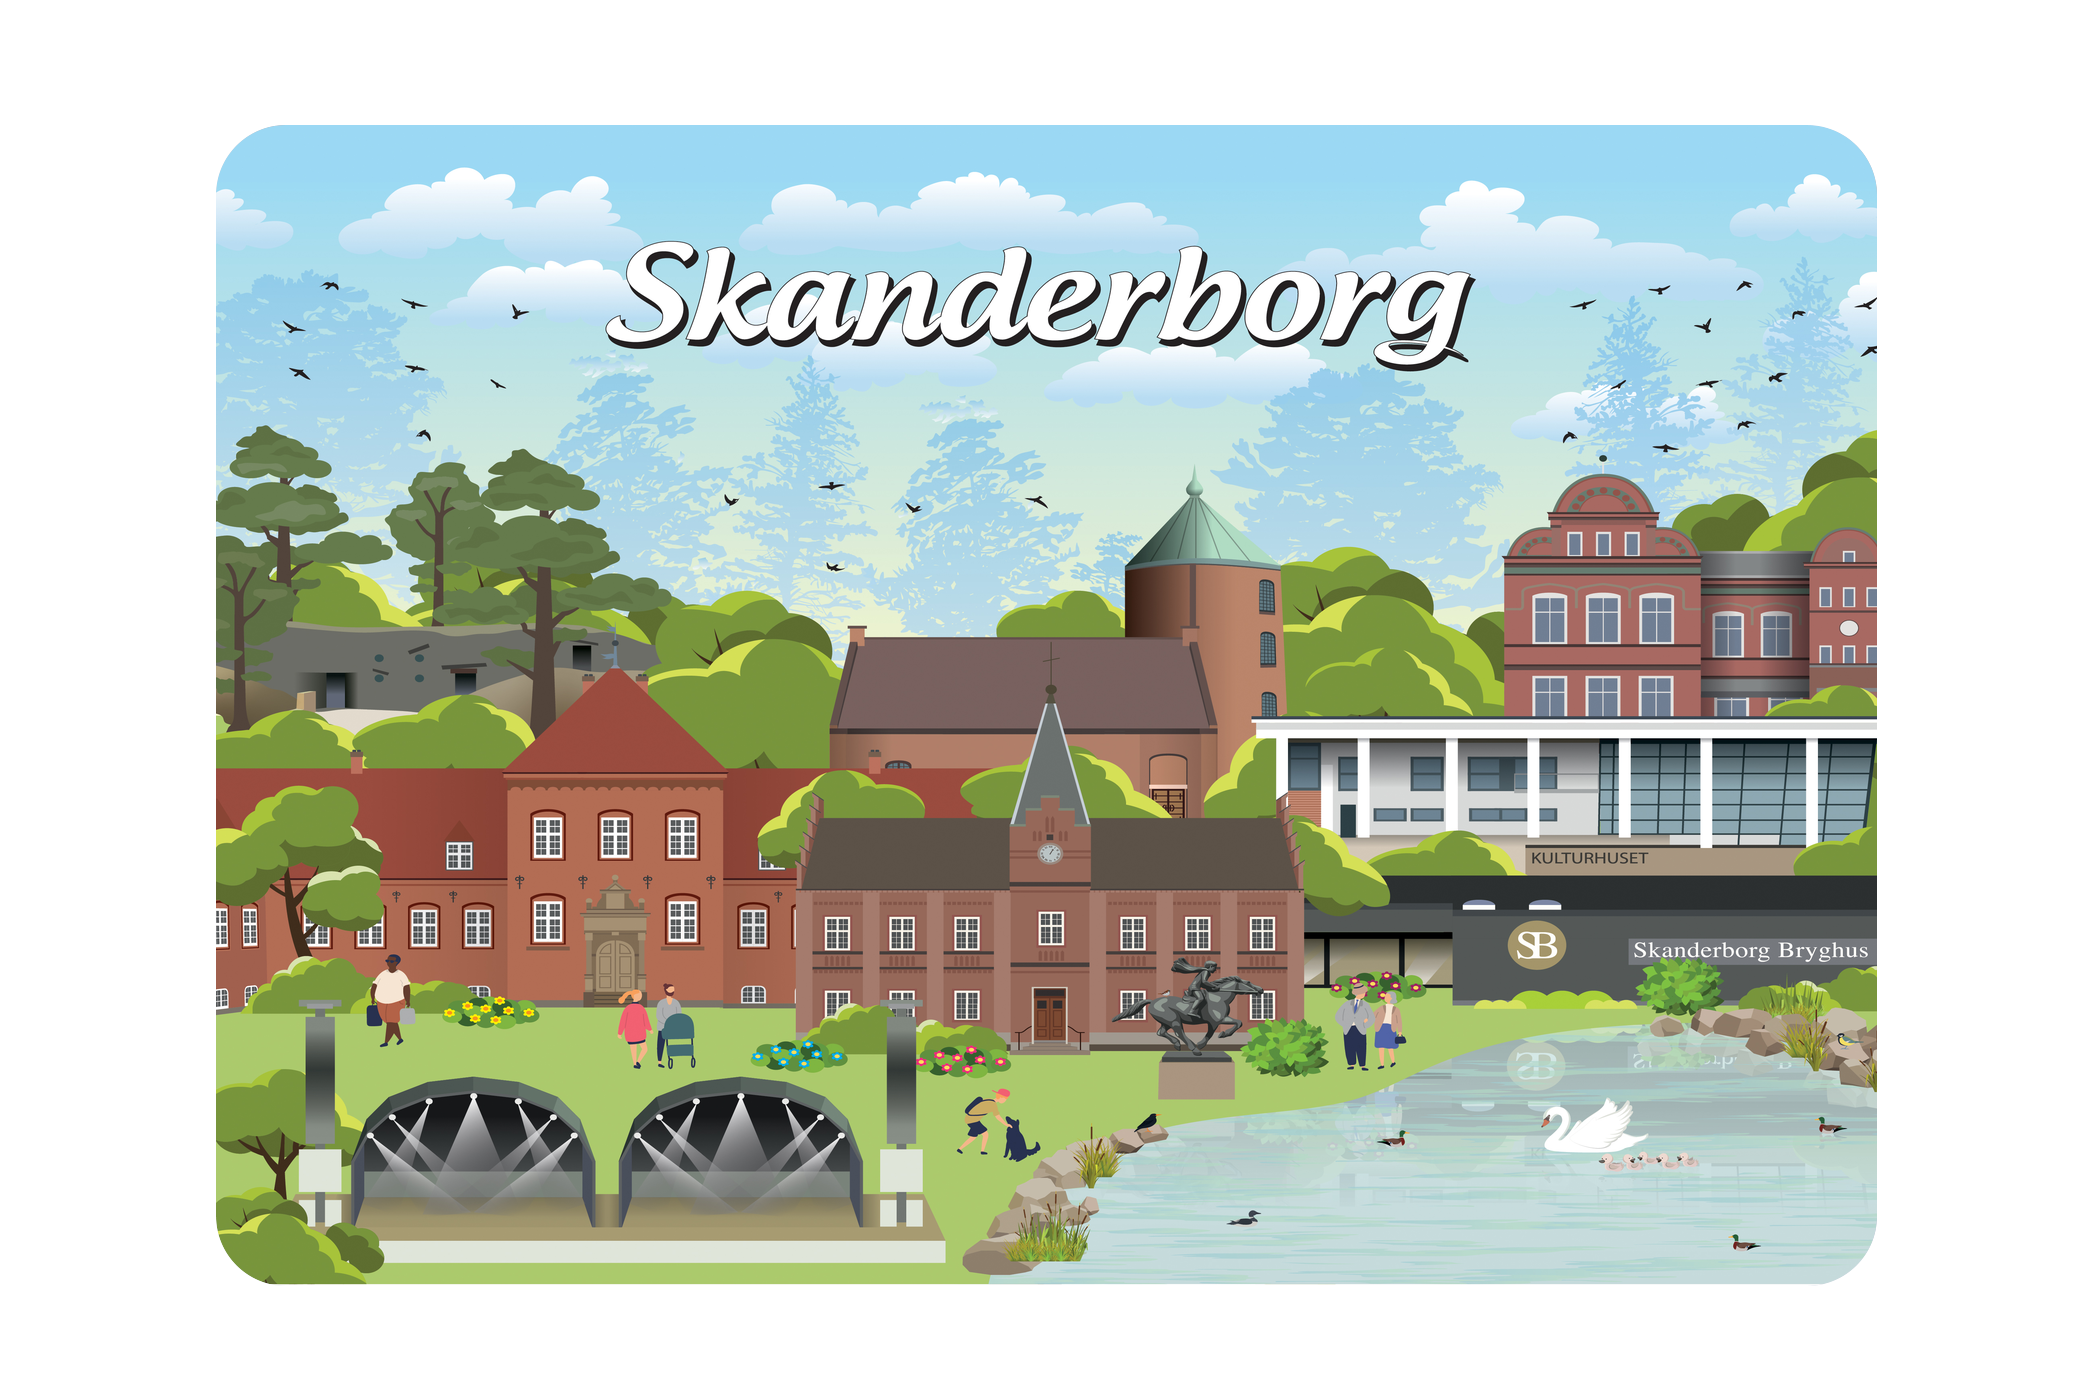 Skanderborg - Bykoncept